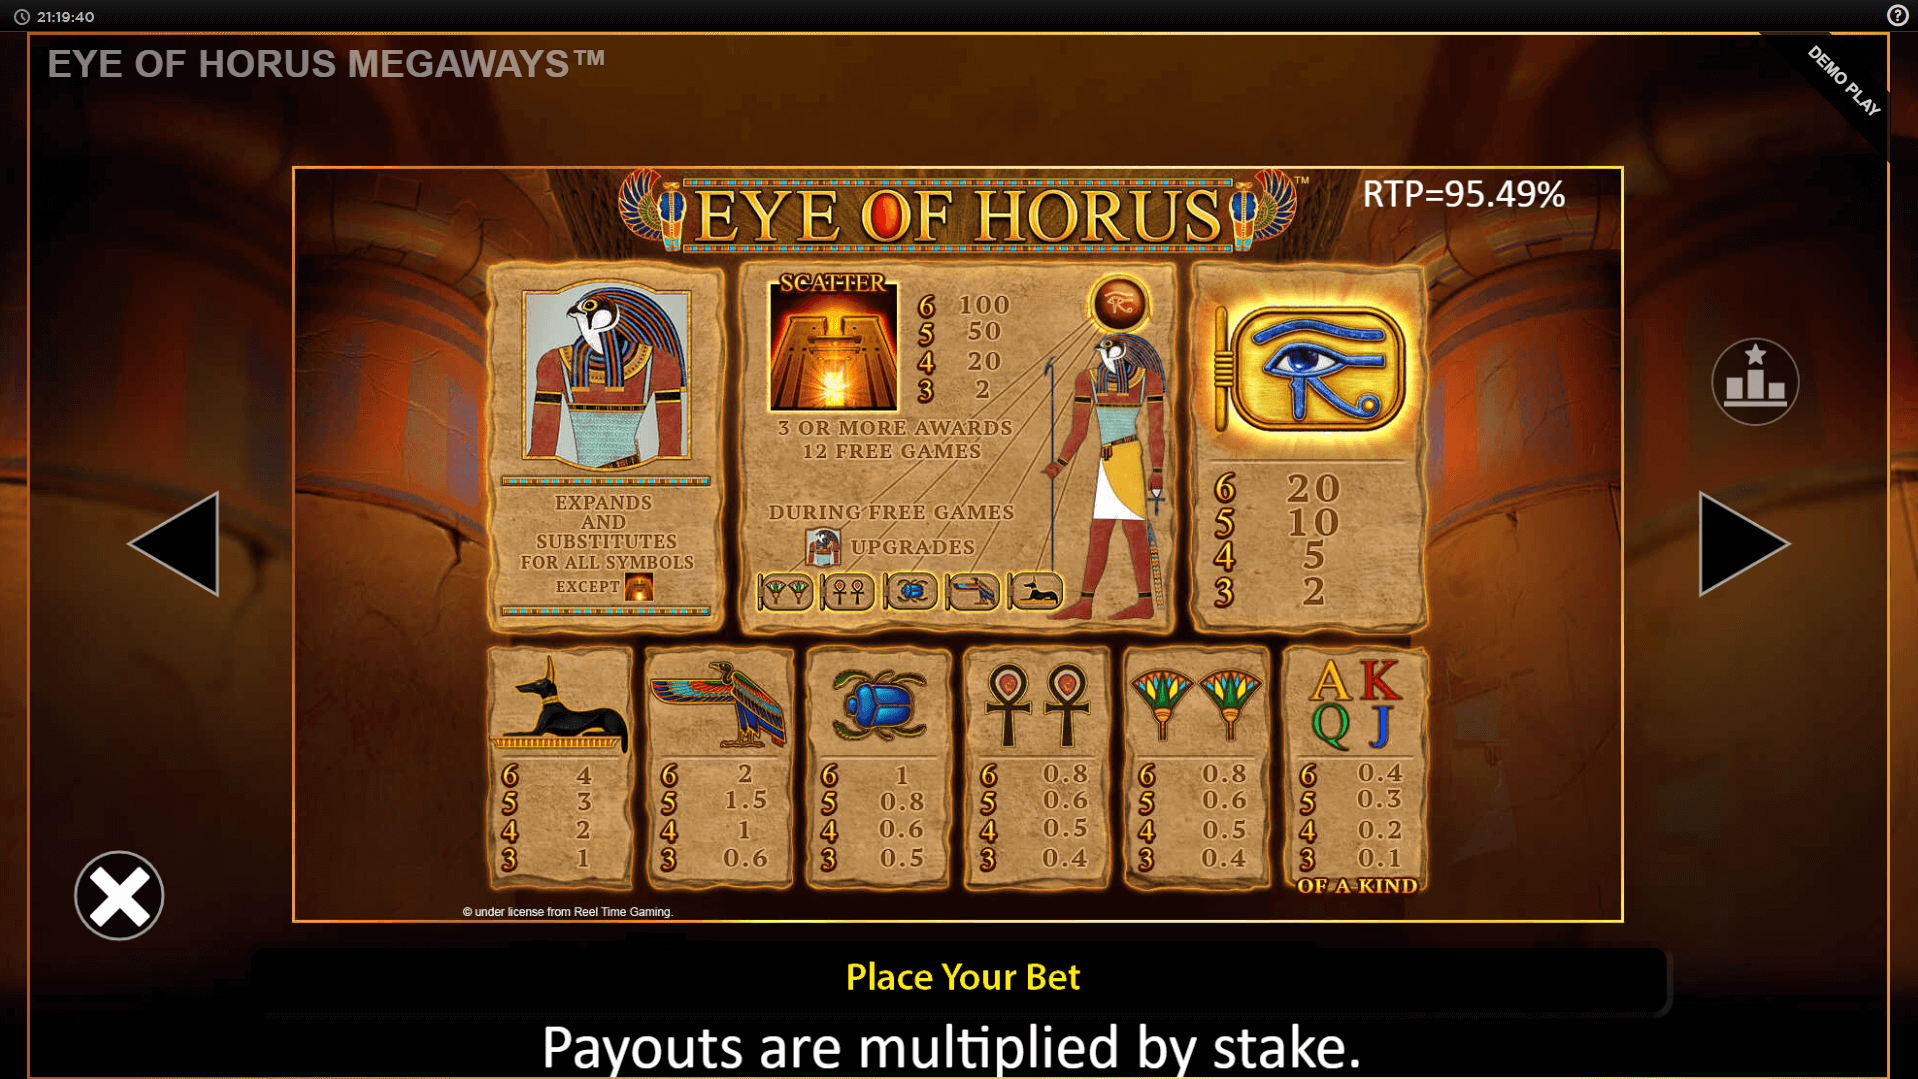 eye of horus megaways slot machine detail image 2